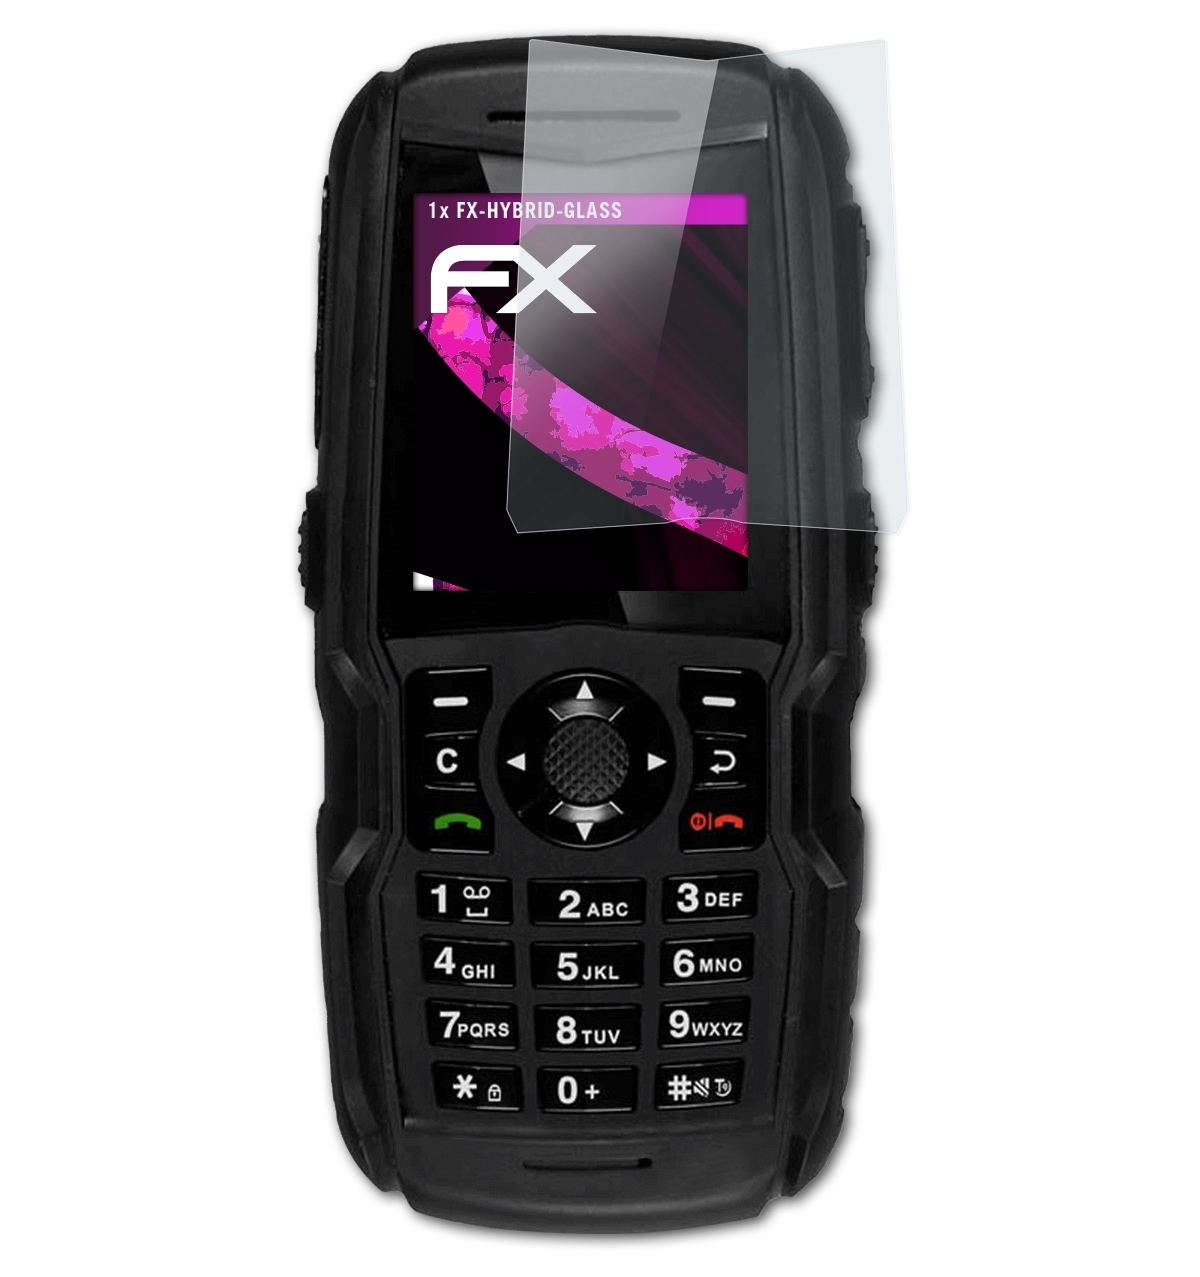 XP5300 ATFOLIX FX-Hybrid-Glass 3G) Sonim Schutzglas(für Force